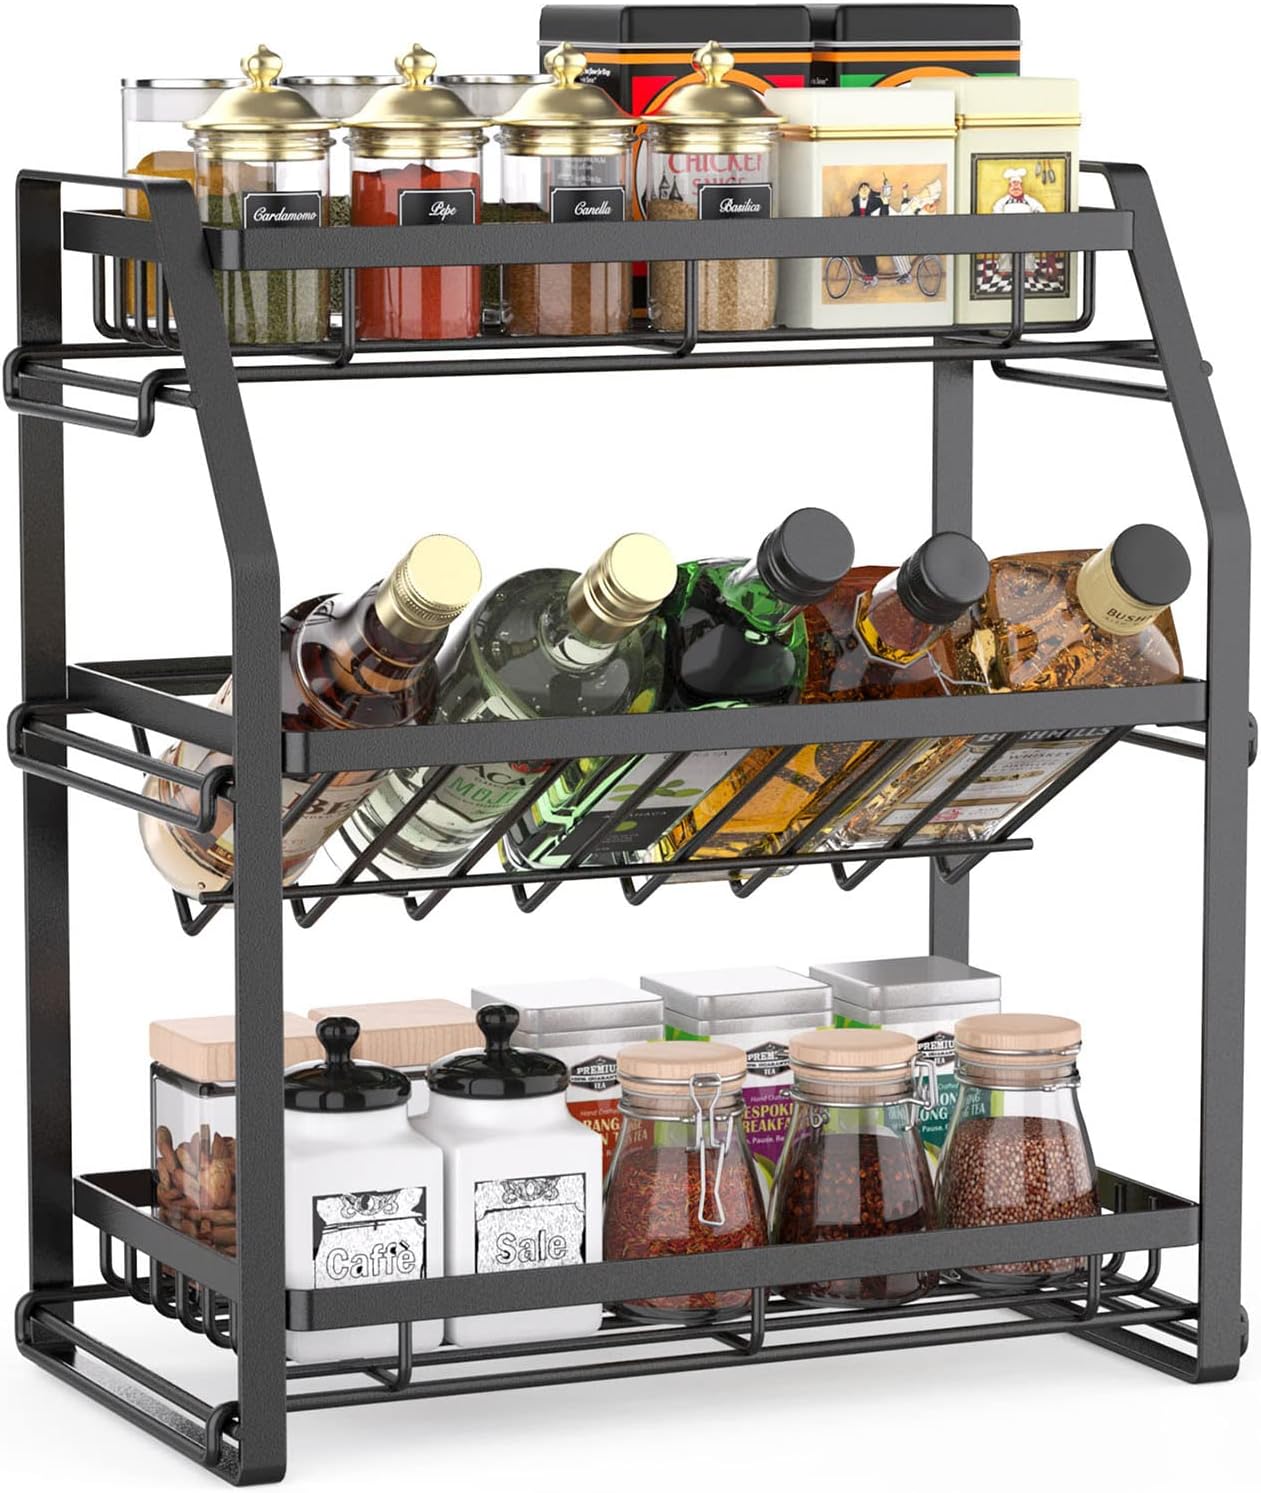 spice-rack-organizer-3-tier-seasoning-organizer-kitchen-spice-shelf-countertop-organizer-for-bathroom-vanity-kitchen-black